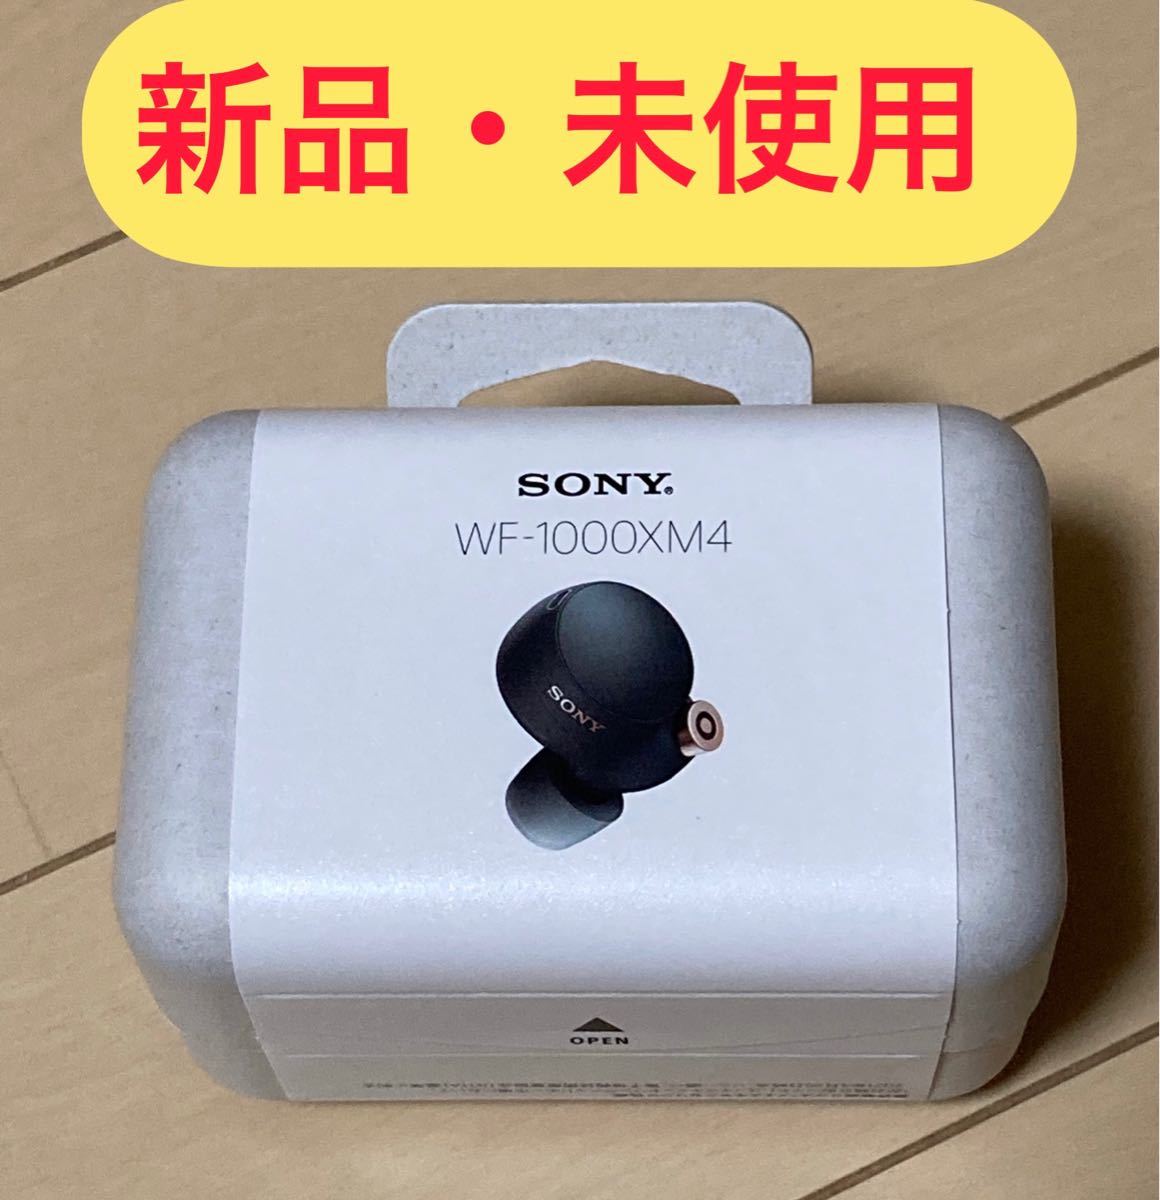 日本公式サイト 【新品未開封・即日発送】WF-1000XM4 bm ソニー ワイヤレスイヤホン イヤフォン